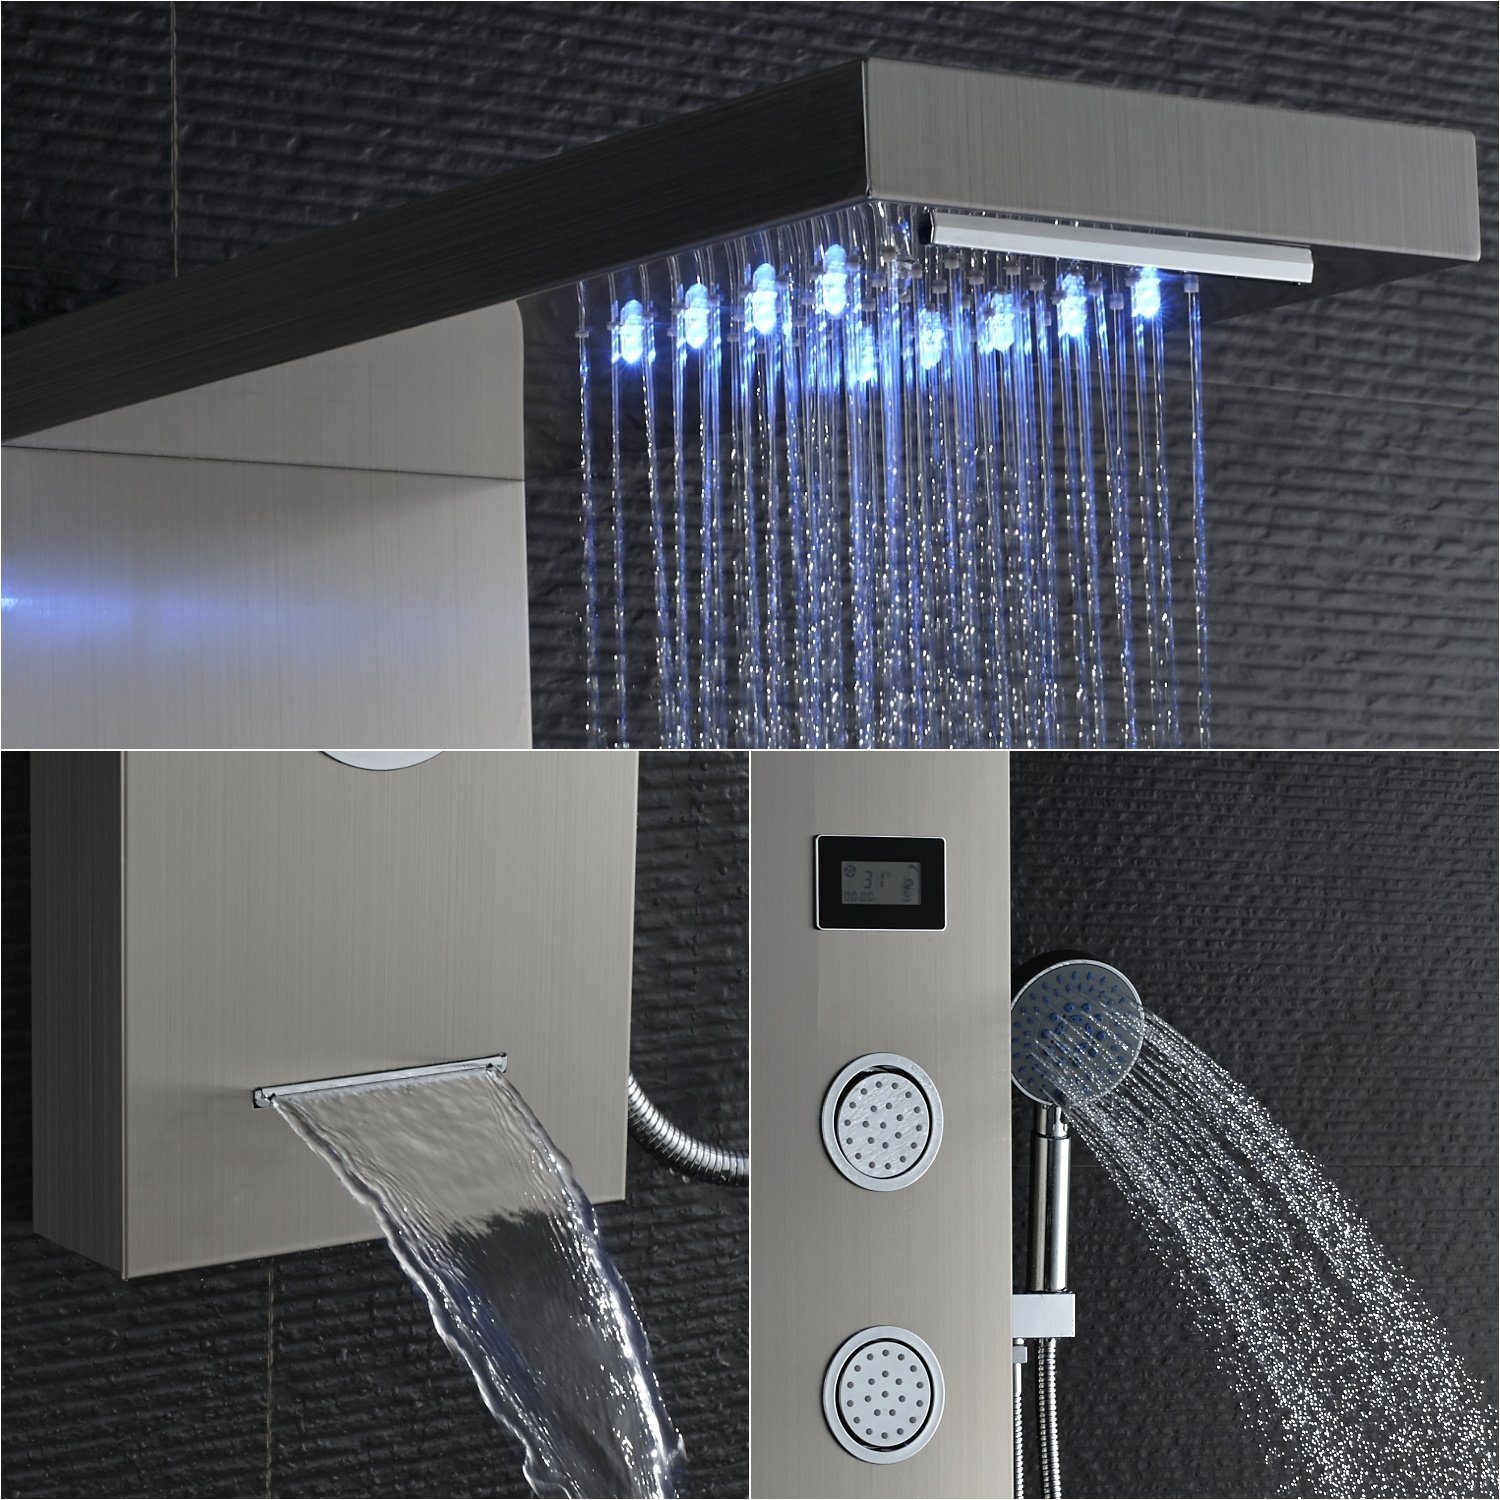 5-Funktion Duschsystem Duschsäule Handbrause, Duschpaneel Auralum mit LED Wassertemperatur-Display Badezimmer Dusch Edelstahl Duschset,